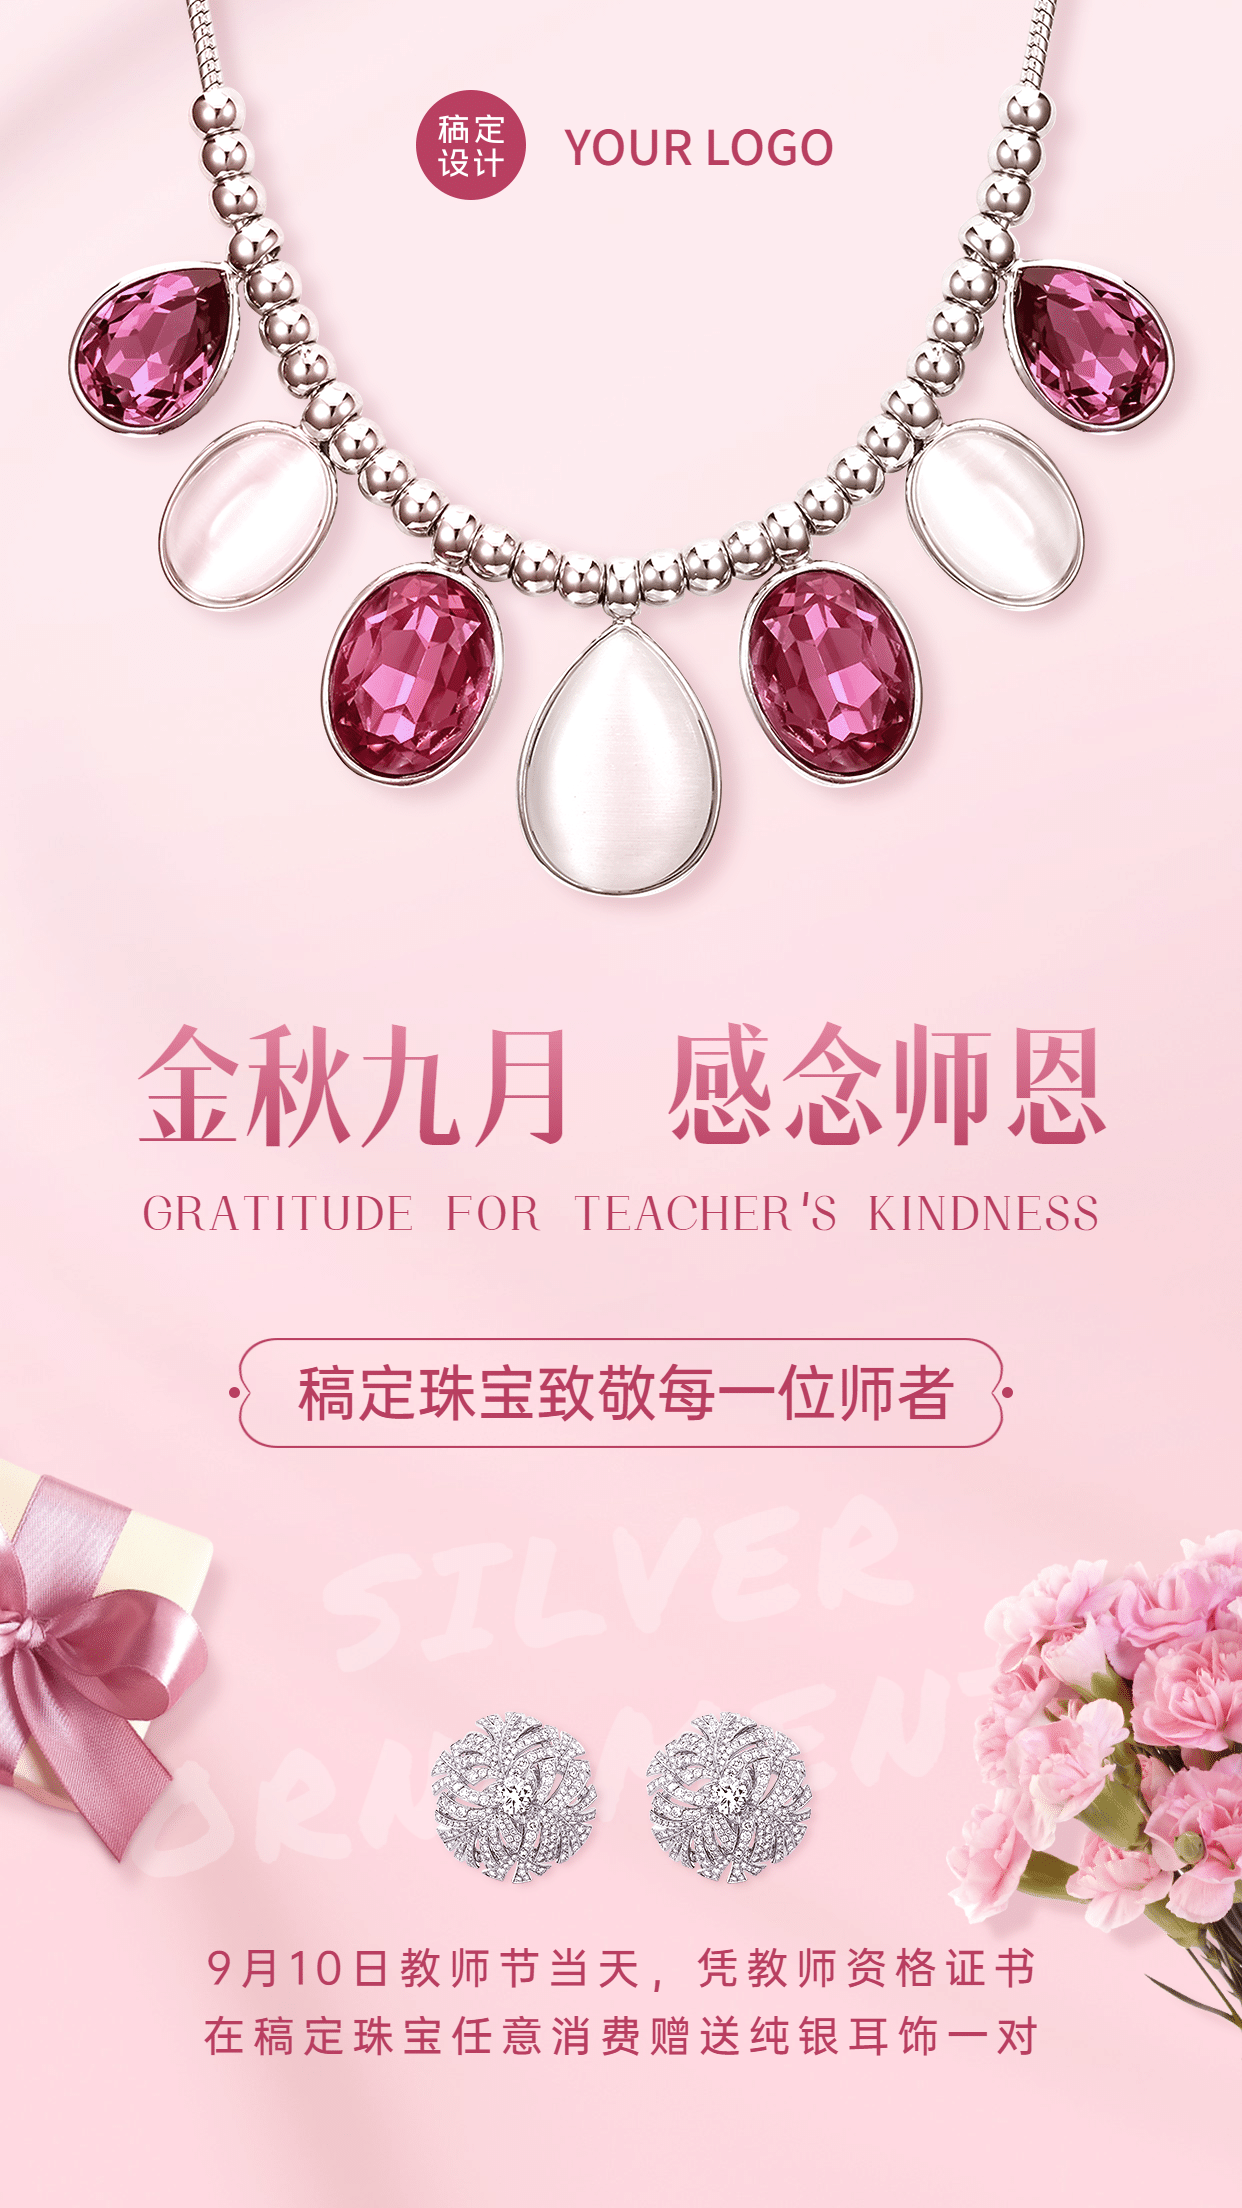 教师节珠宝产品营销促销手机海报预览效果